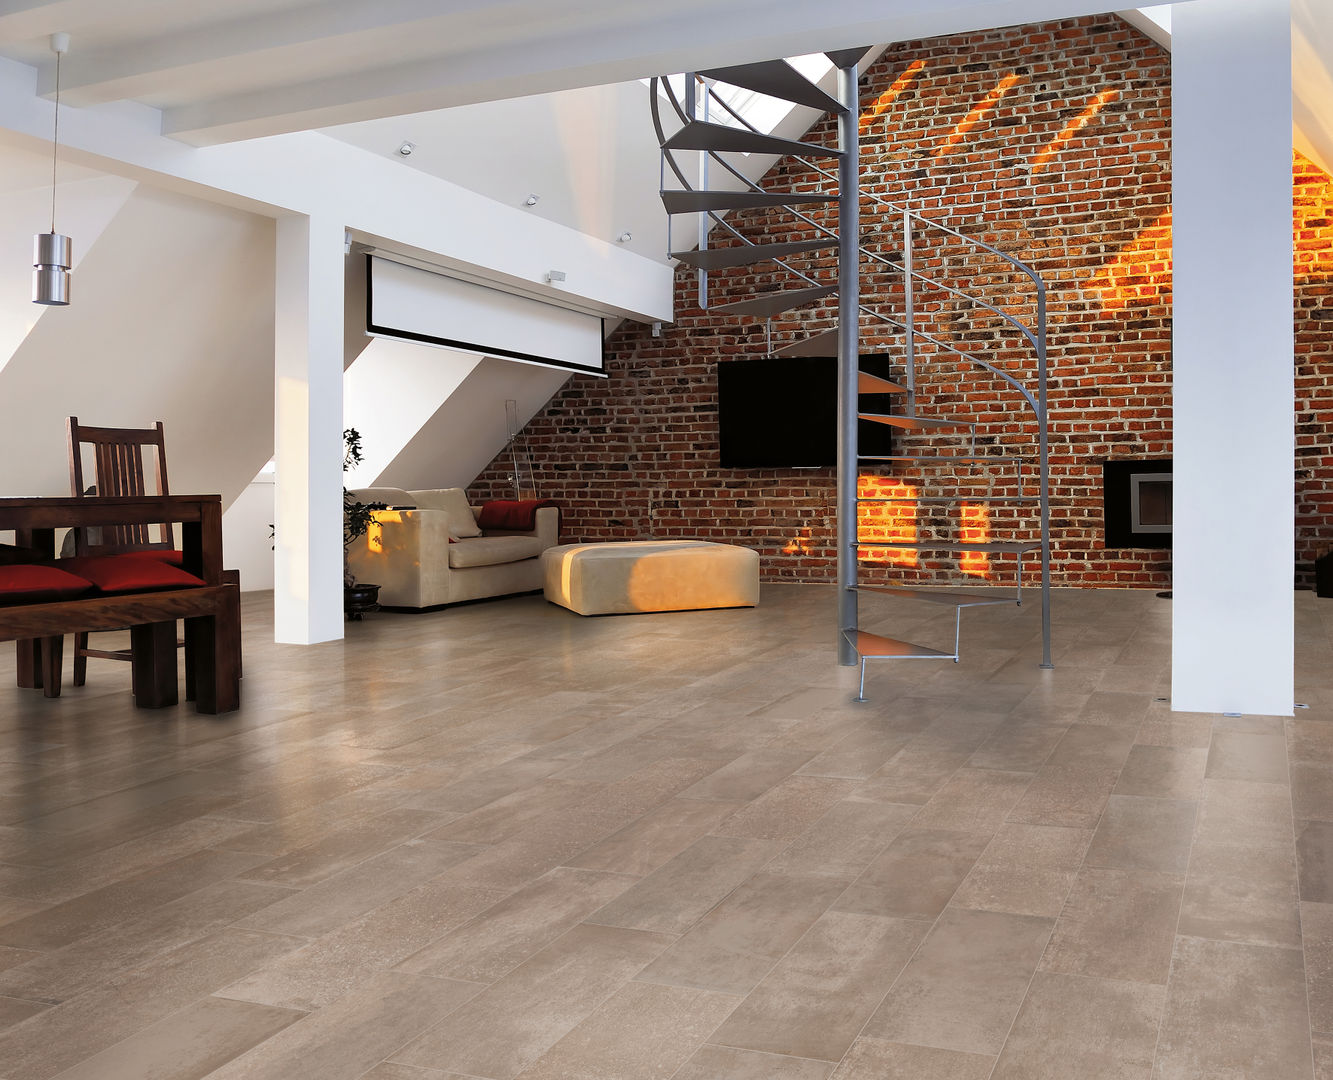 patchwalk, ascot ceramiche ascot ceramiche Walls & floors Wall & floor coverings